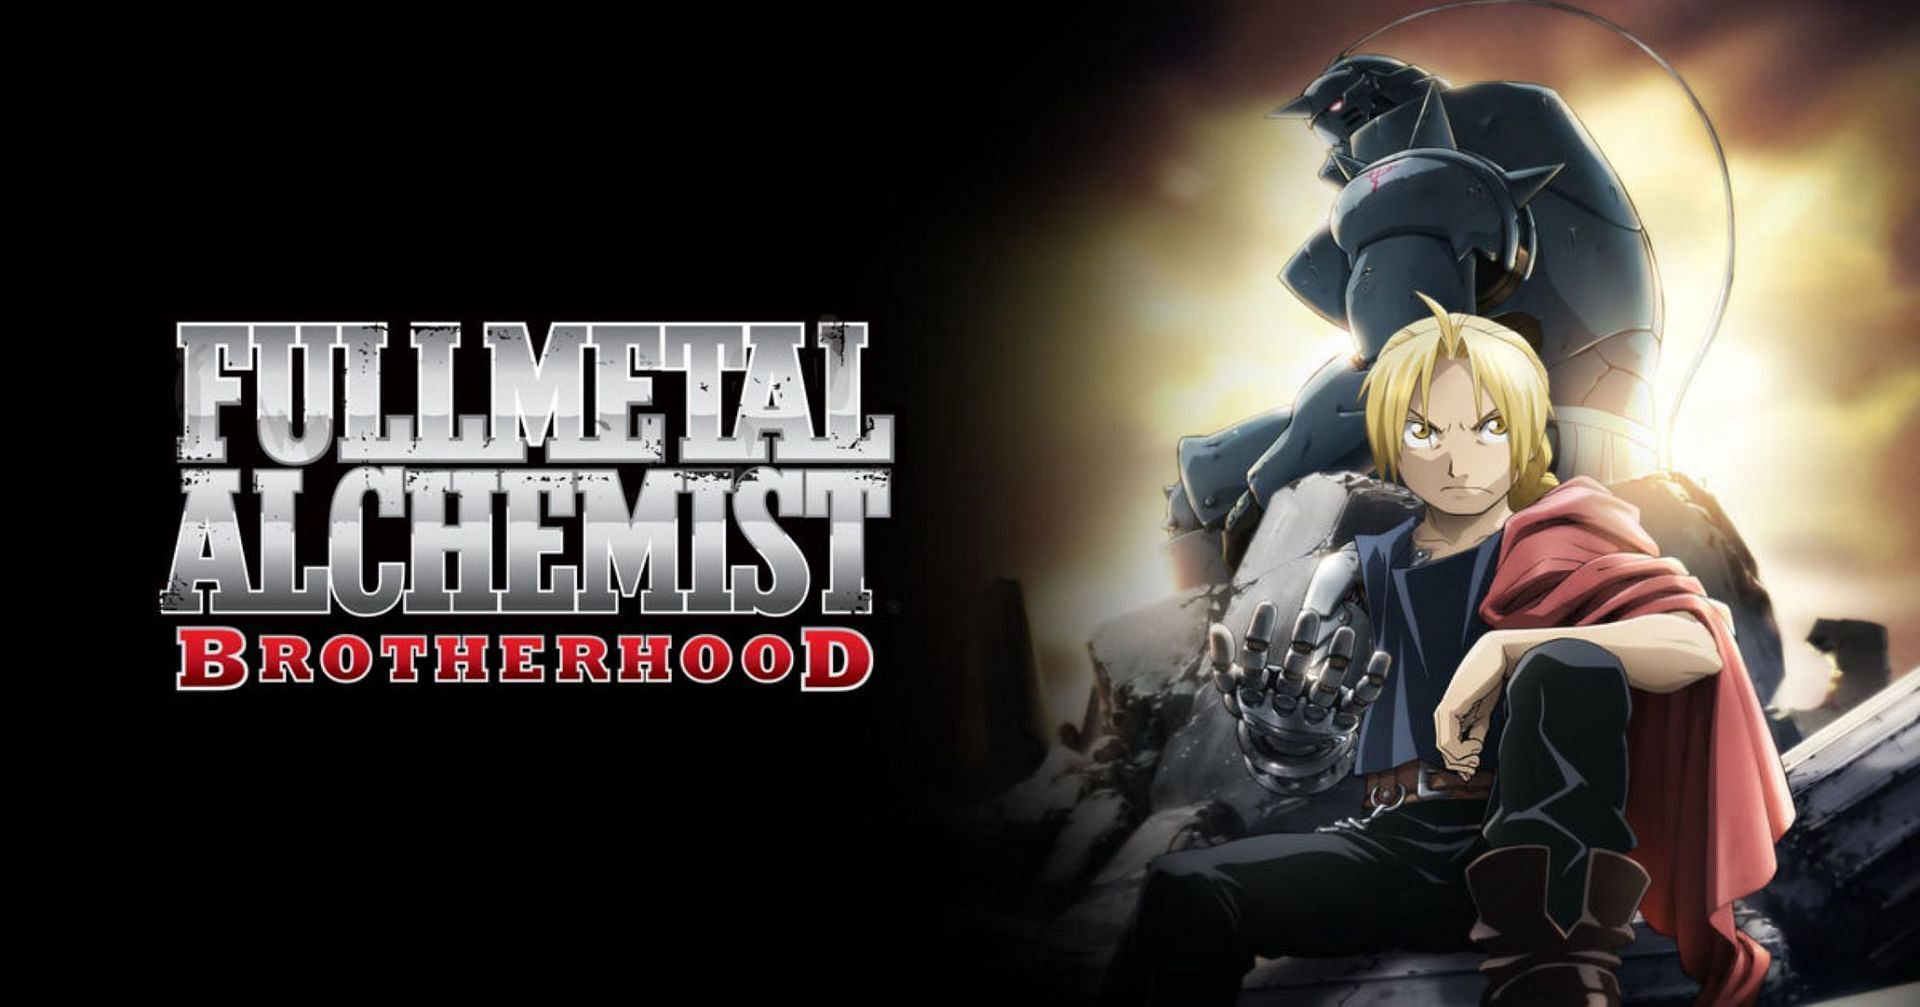 Fullmetal Alchemist: Brotherhood (Image via Studio Bones)